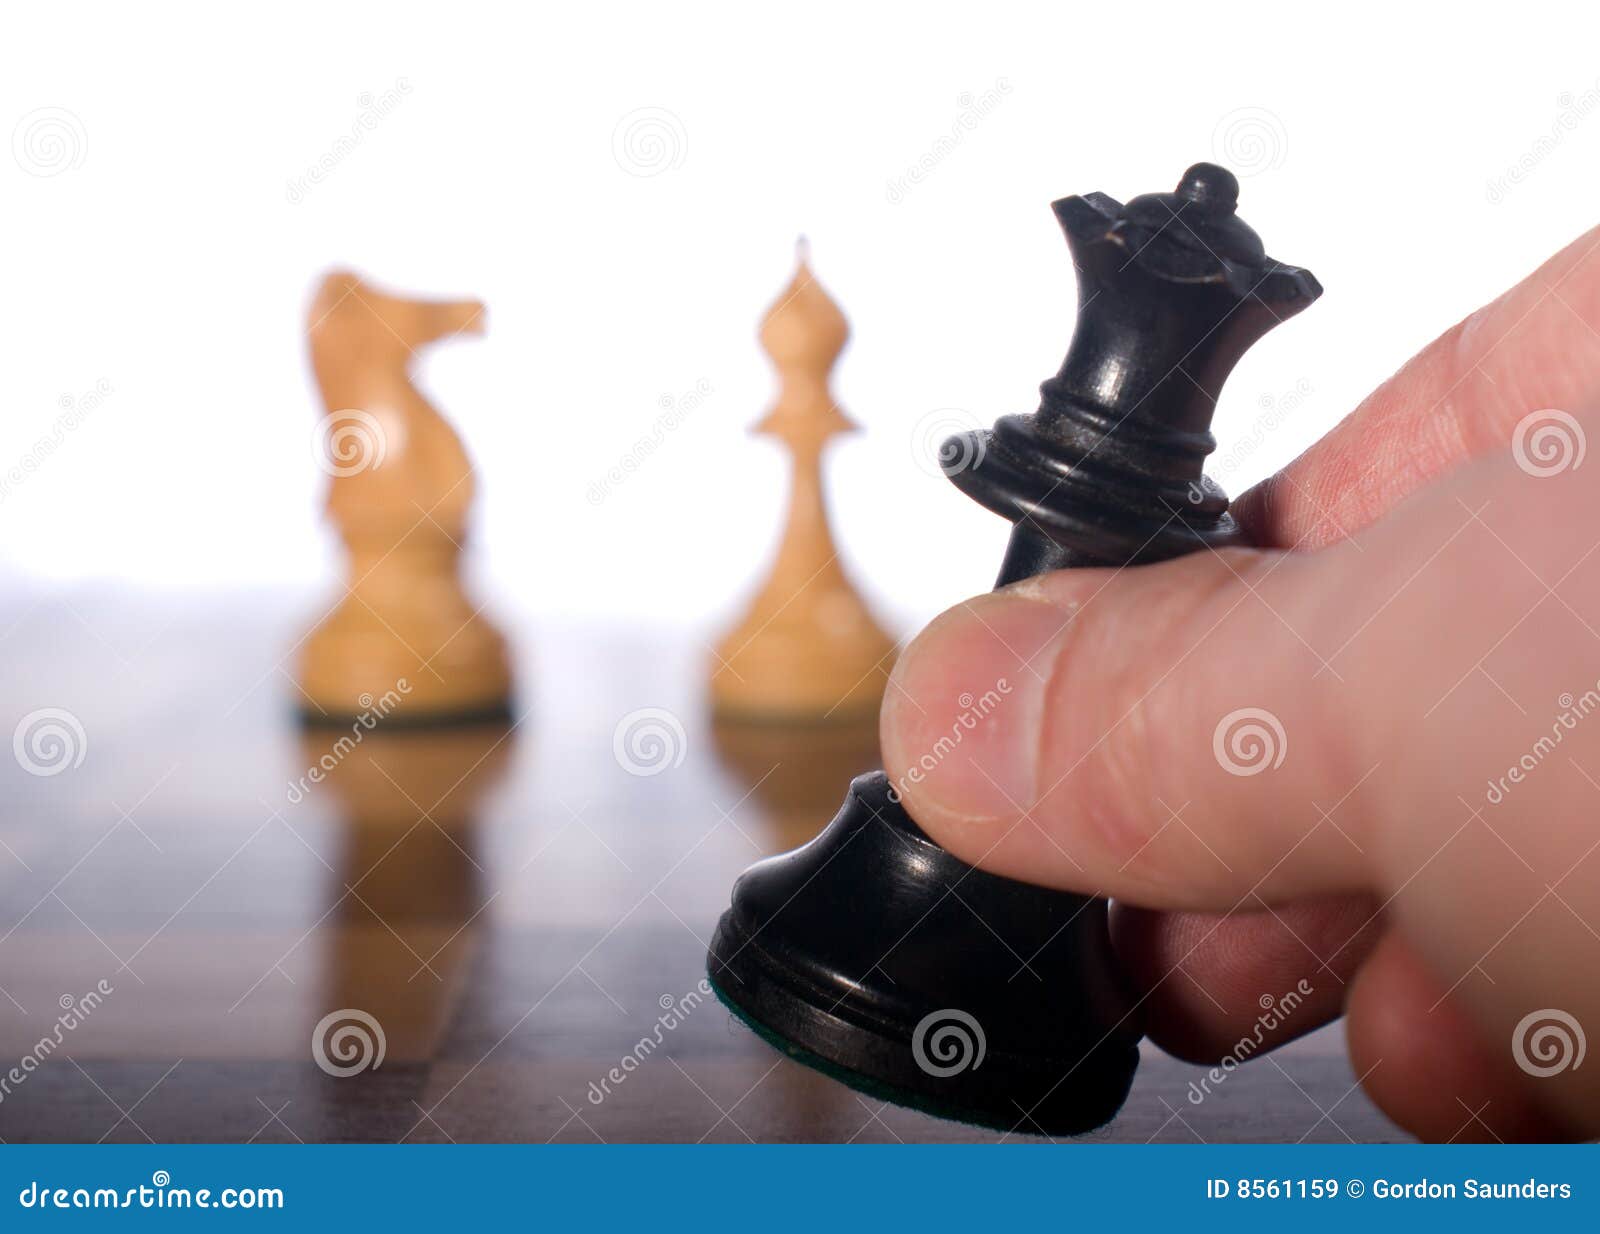 55 S Checkmate Bilder und Fotos - Getty Images